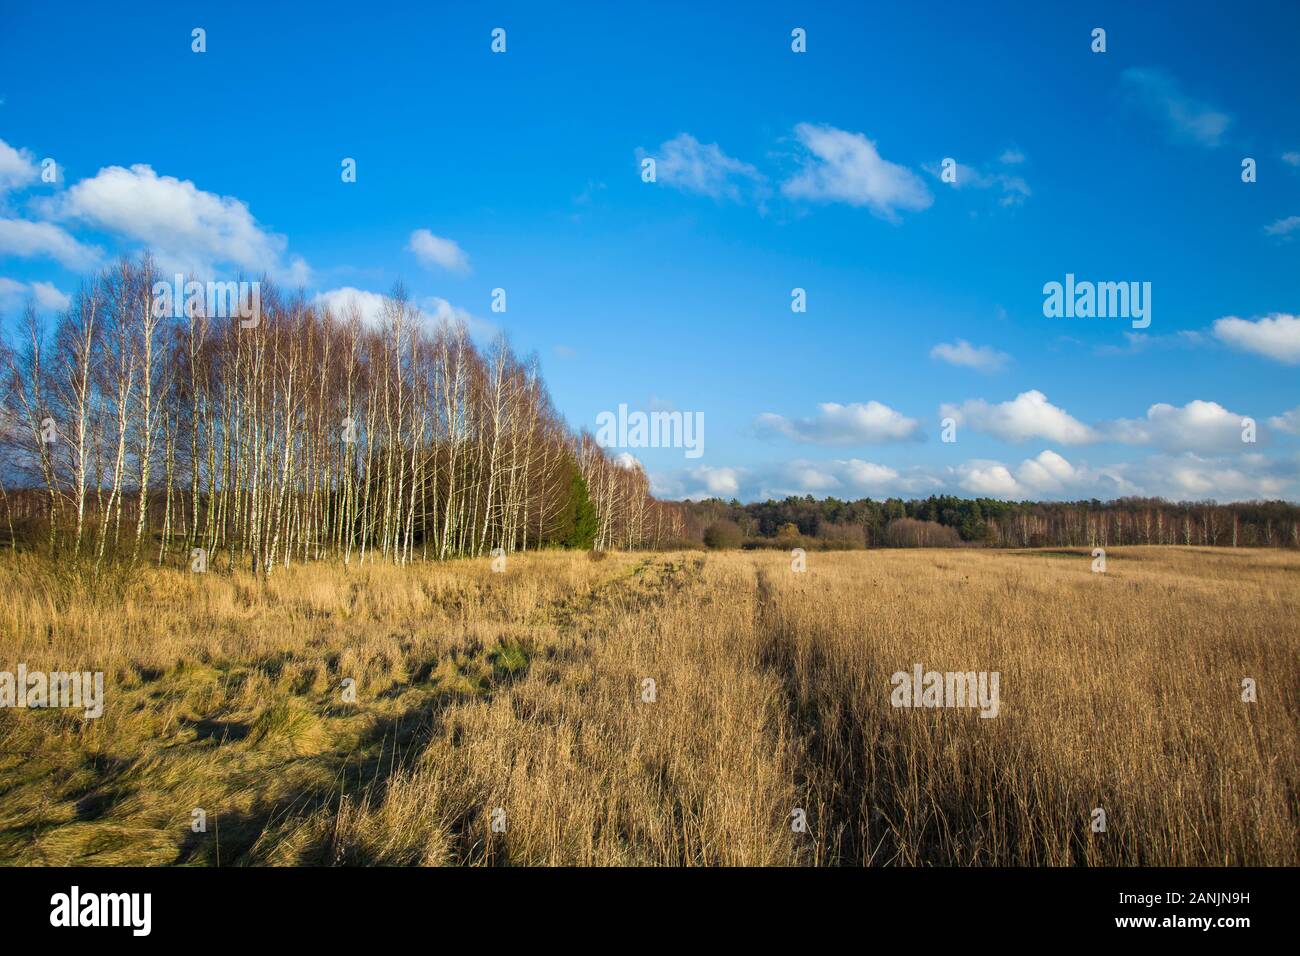 Groß und trockenes Gras auf dem Feld, Bäume und blauer Himmel Stockfoto